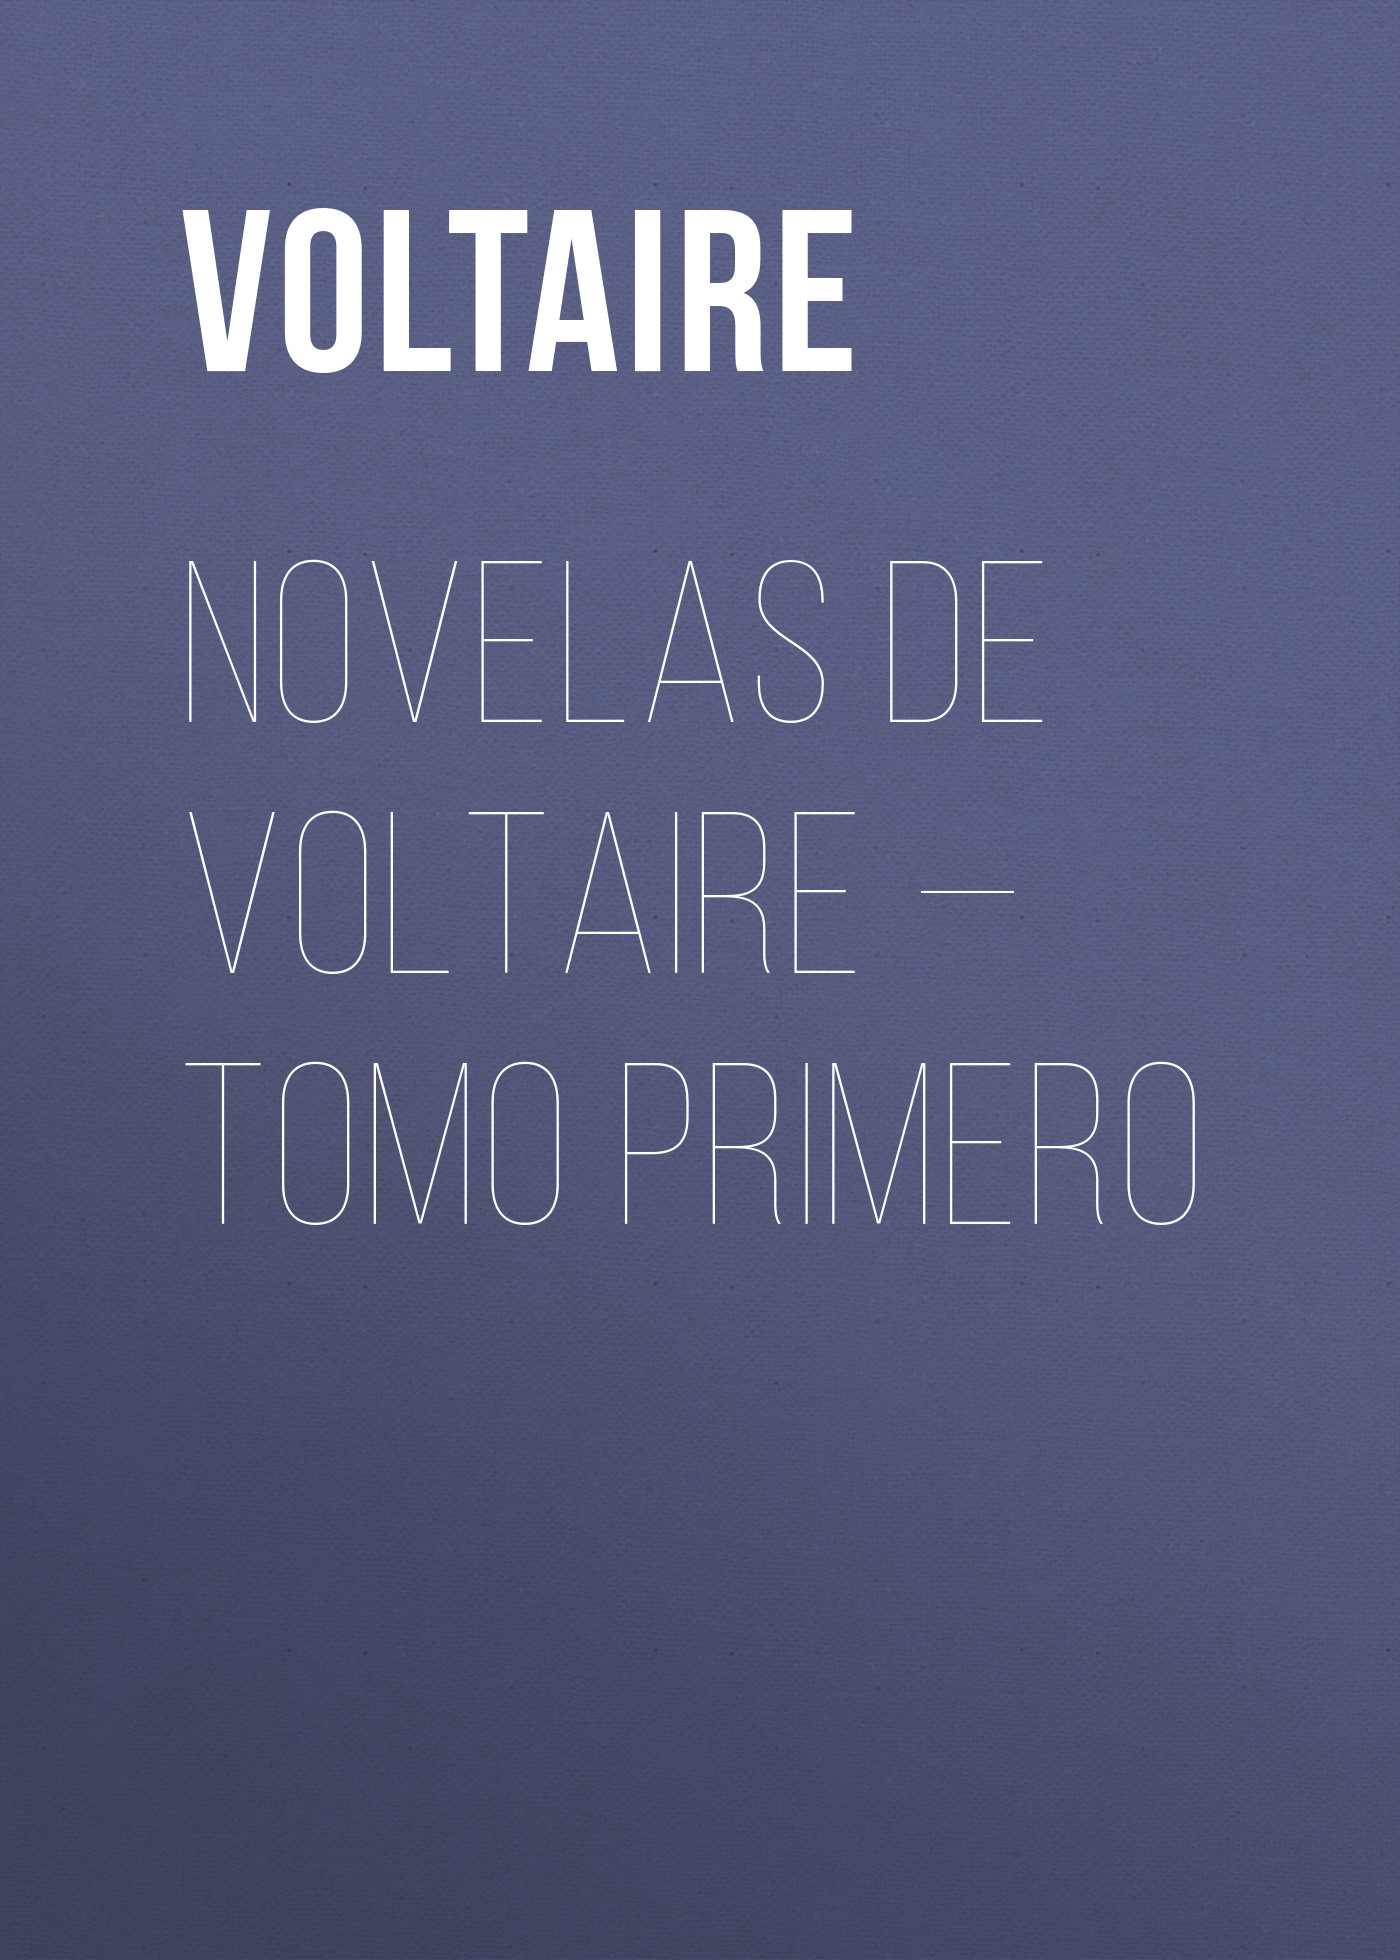 Книга Novelas de Voltaire – Tomo Primero из серии , созданная  Voltaire, может относится к жанру Литература 18 века, Зарубежная классика. Стоимость электронной книги Novelas de Voltaire – Tomo Primero с идентификатором 25561220 составляет 0 руб.